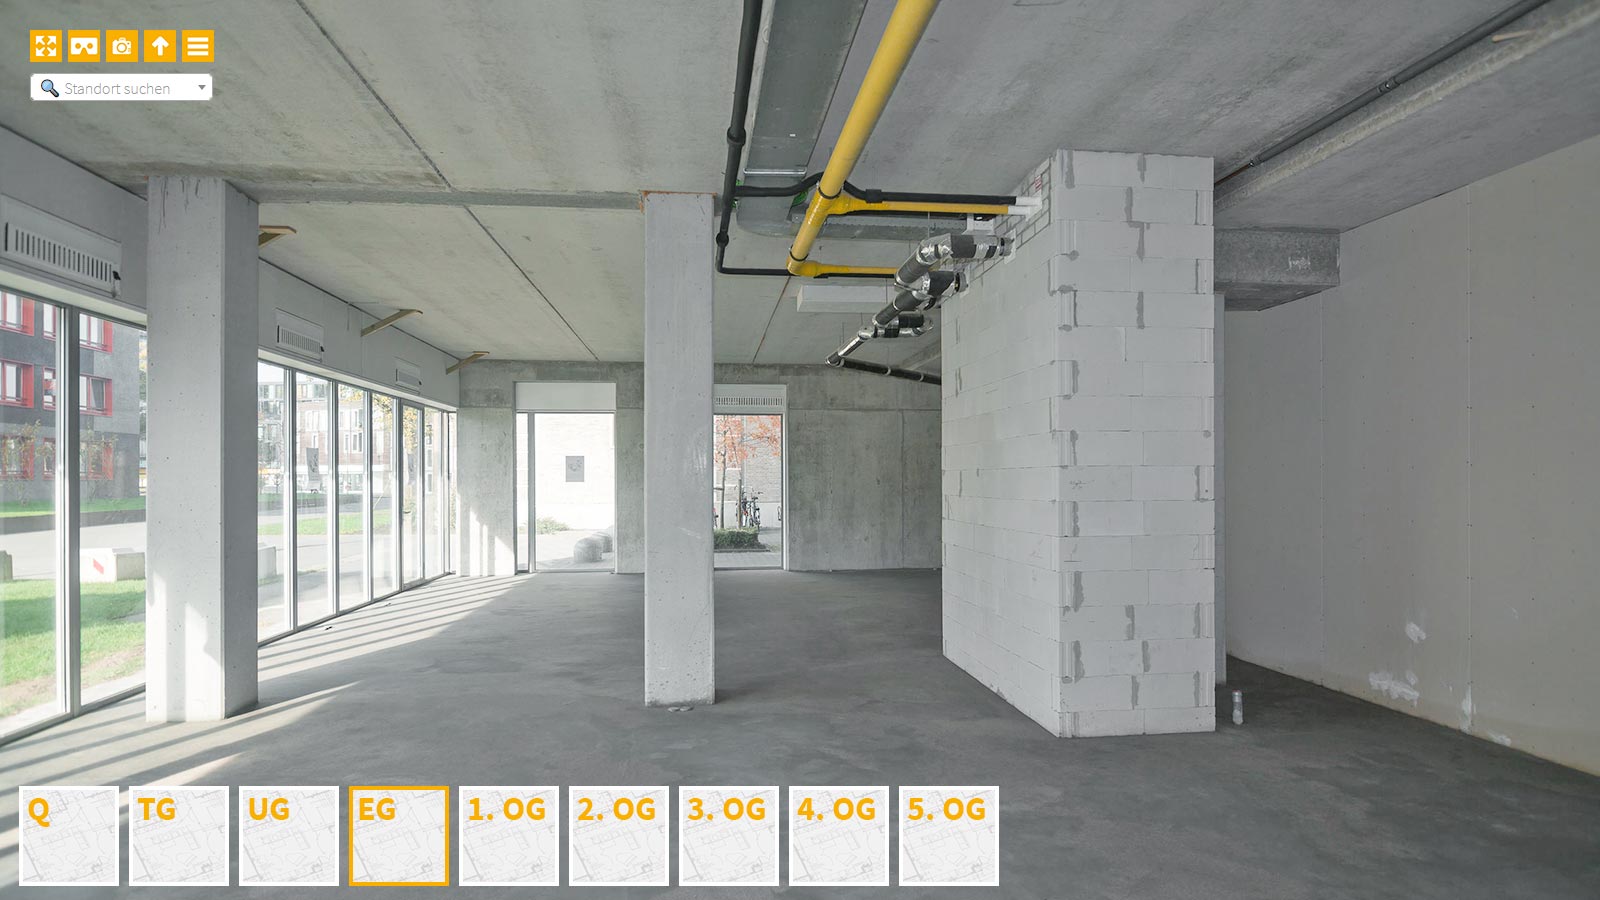 Baudokumentation 360 Grad bei gestörten Projekten in 


	


	


	


	


	


	


	


	


	


	Ludwigshafen am Rhein









, Bilddokumentation als virtueller Rundgang